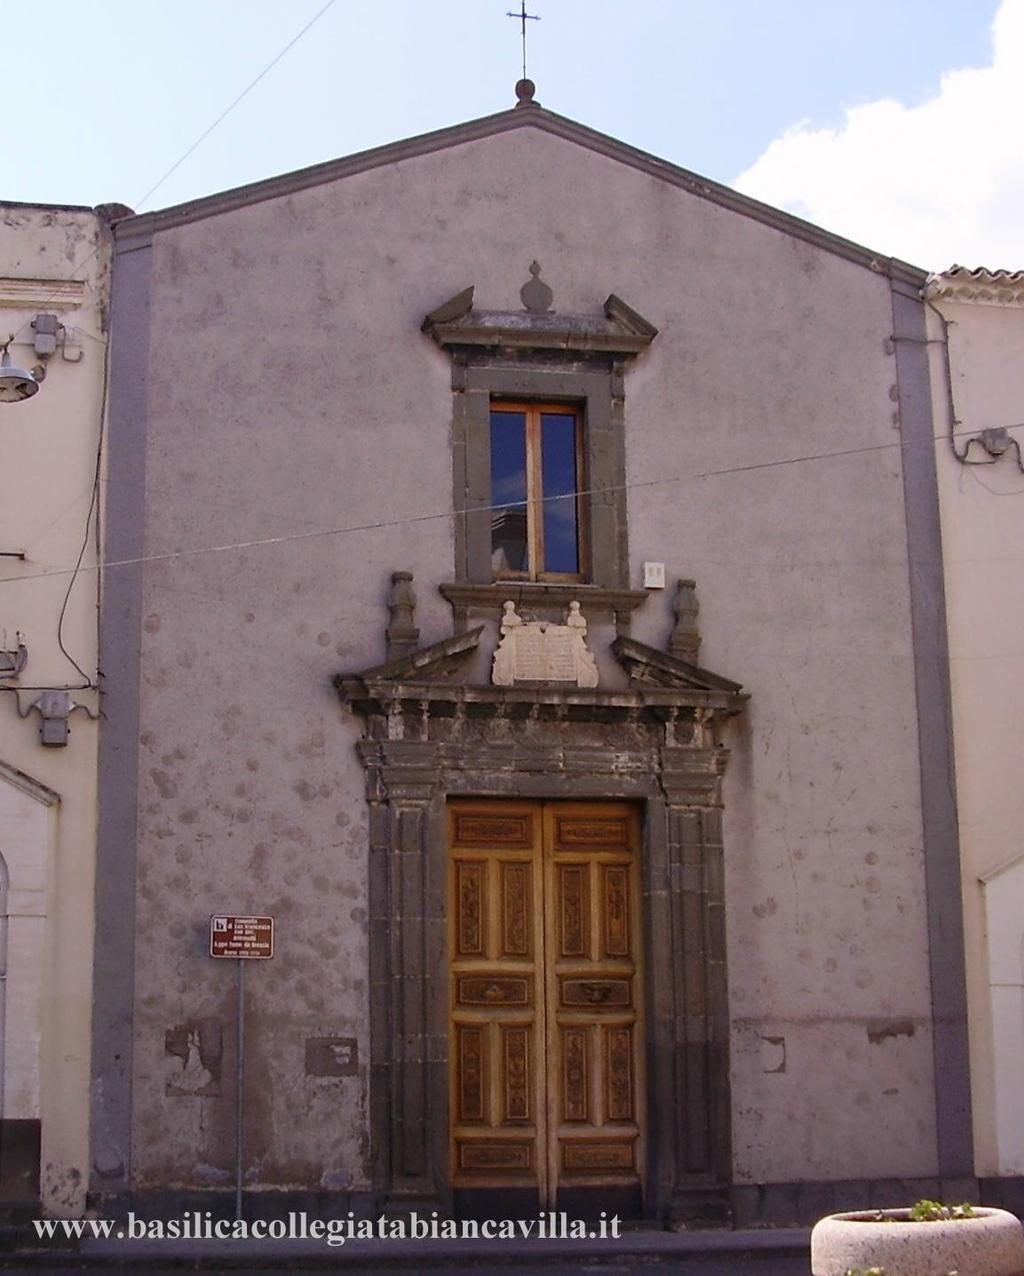 La chiesa di San Francesco è ubicata alla fine di via Giulio Verne, l'antica via Convento, in uno slargo che dal 17 maggio 2014 è stato intitolato a piazza San Francesco d'assisi in seguito alla